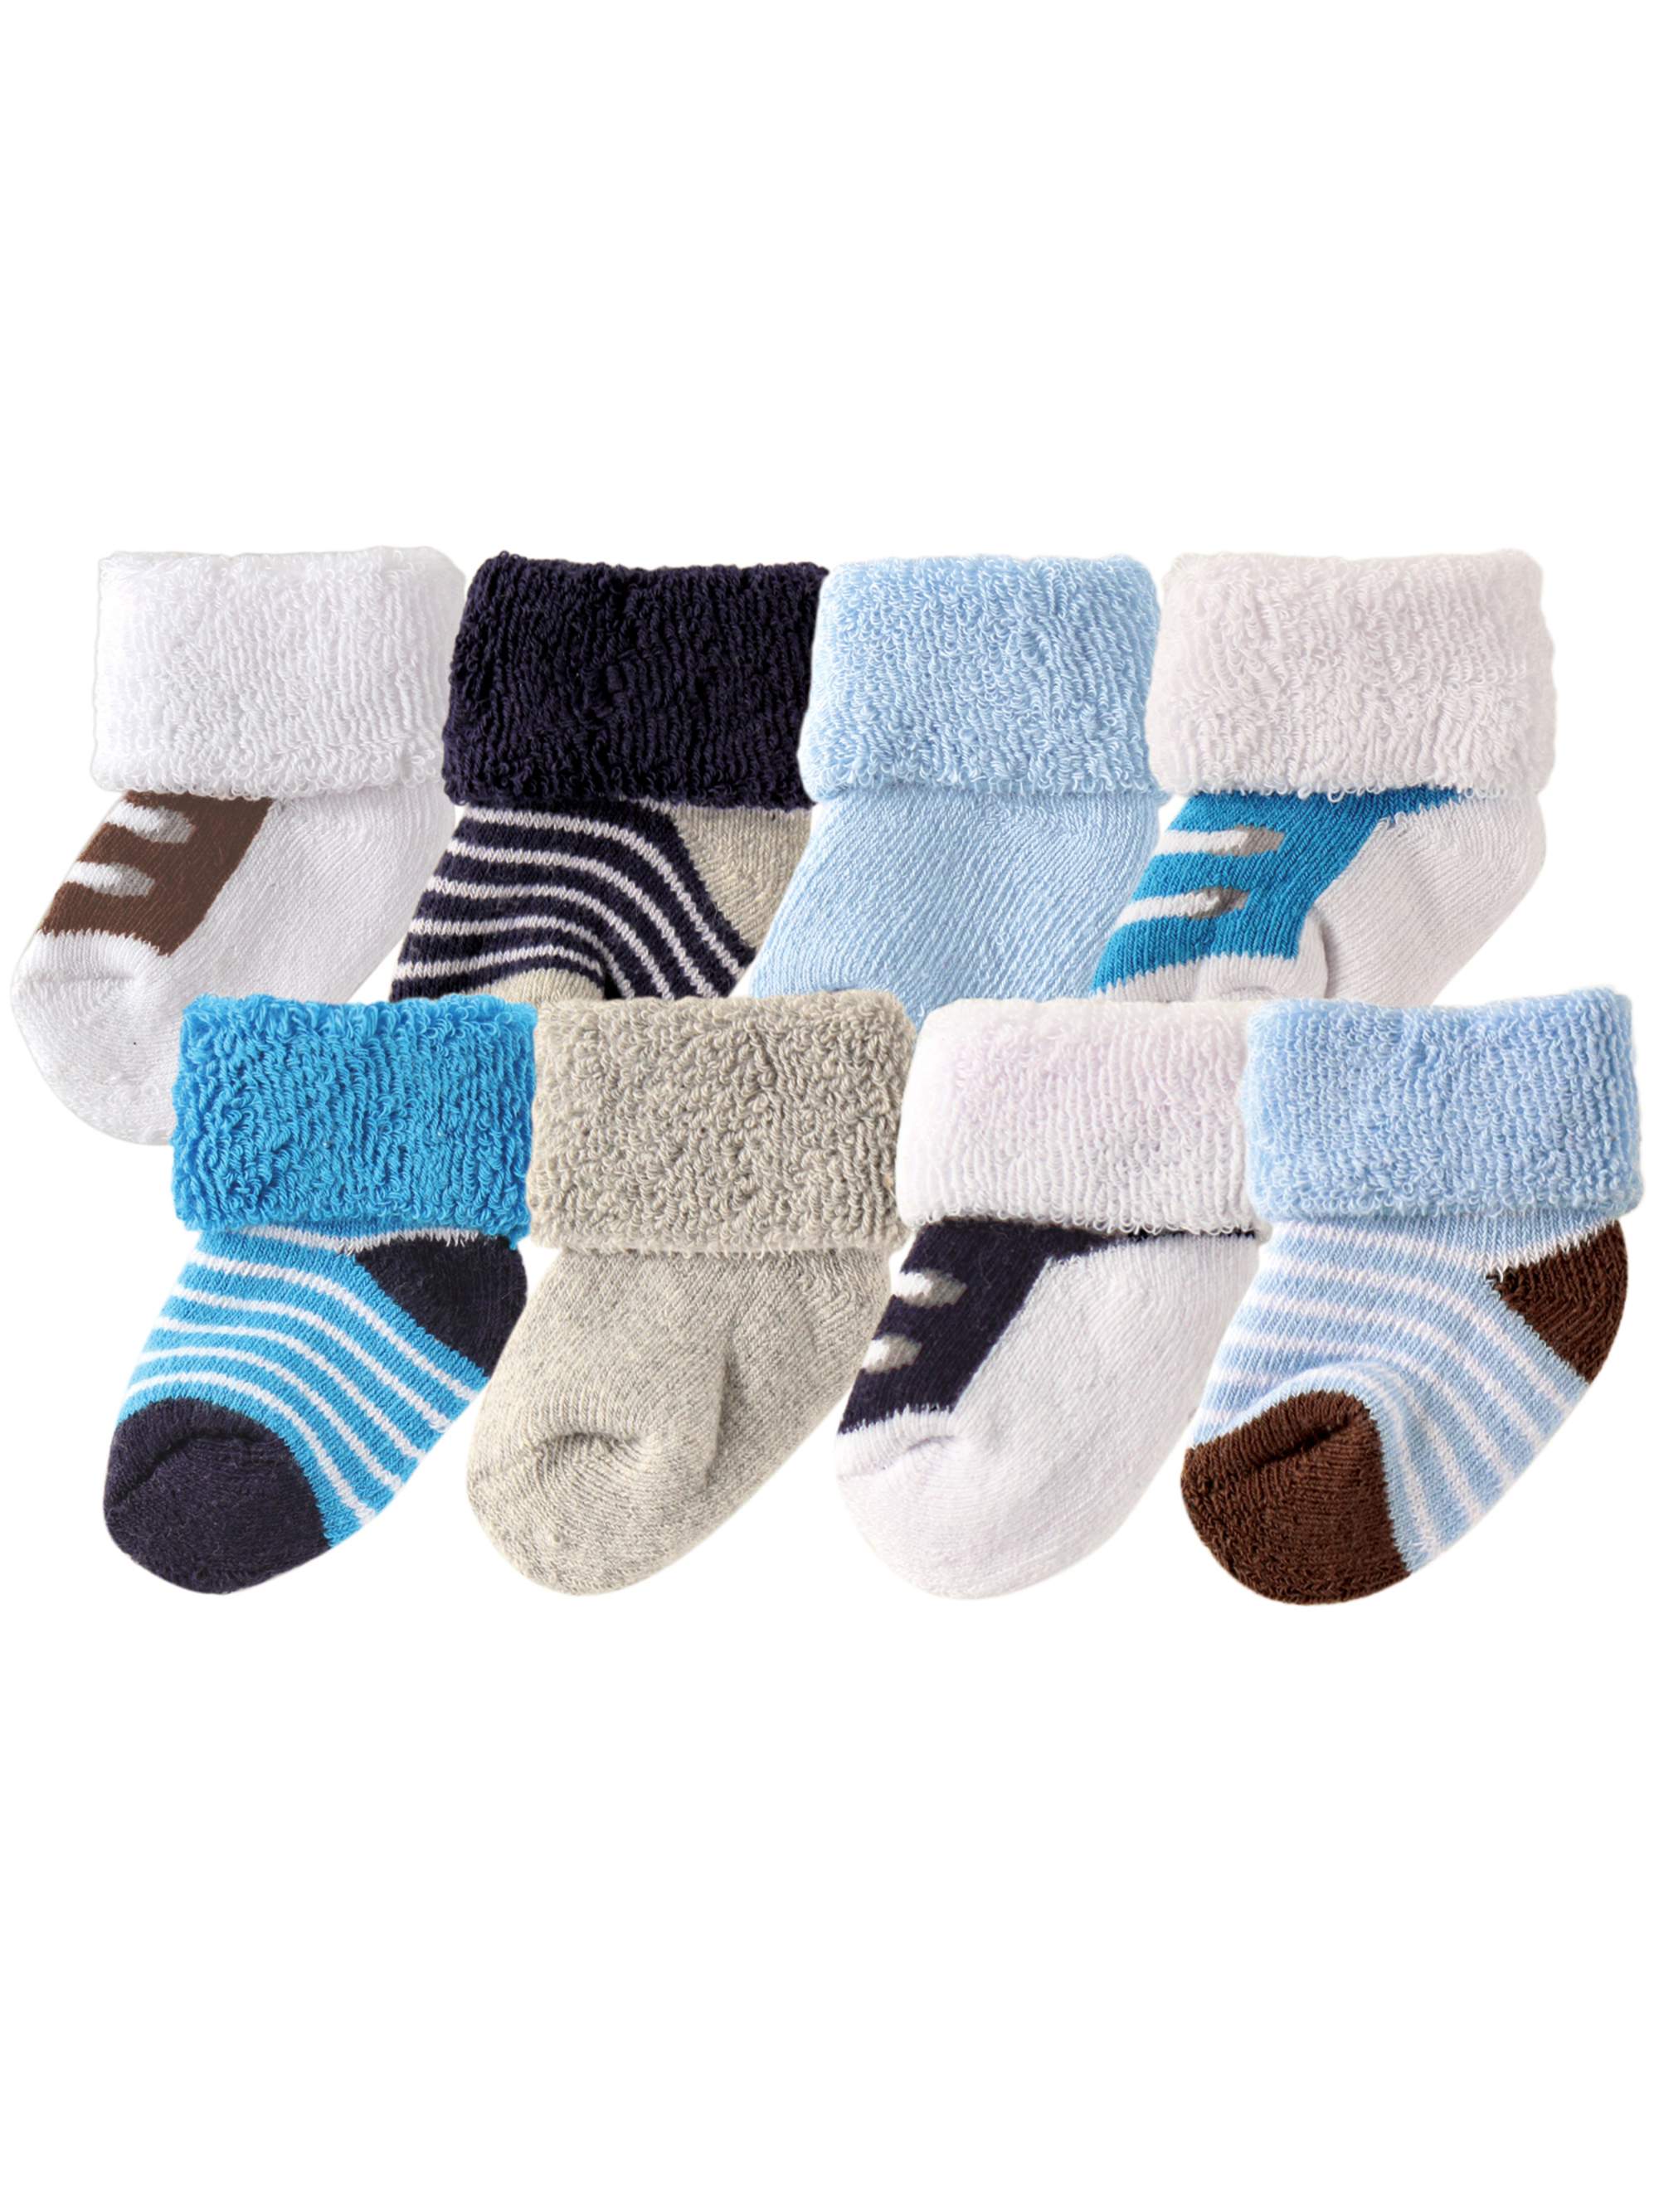 8 Pair Socks Blue